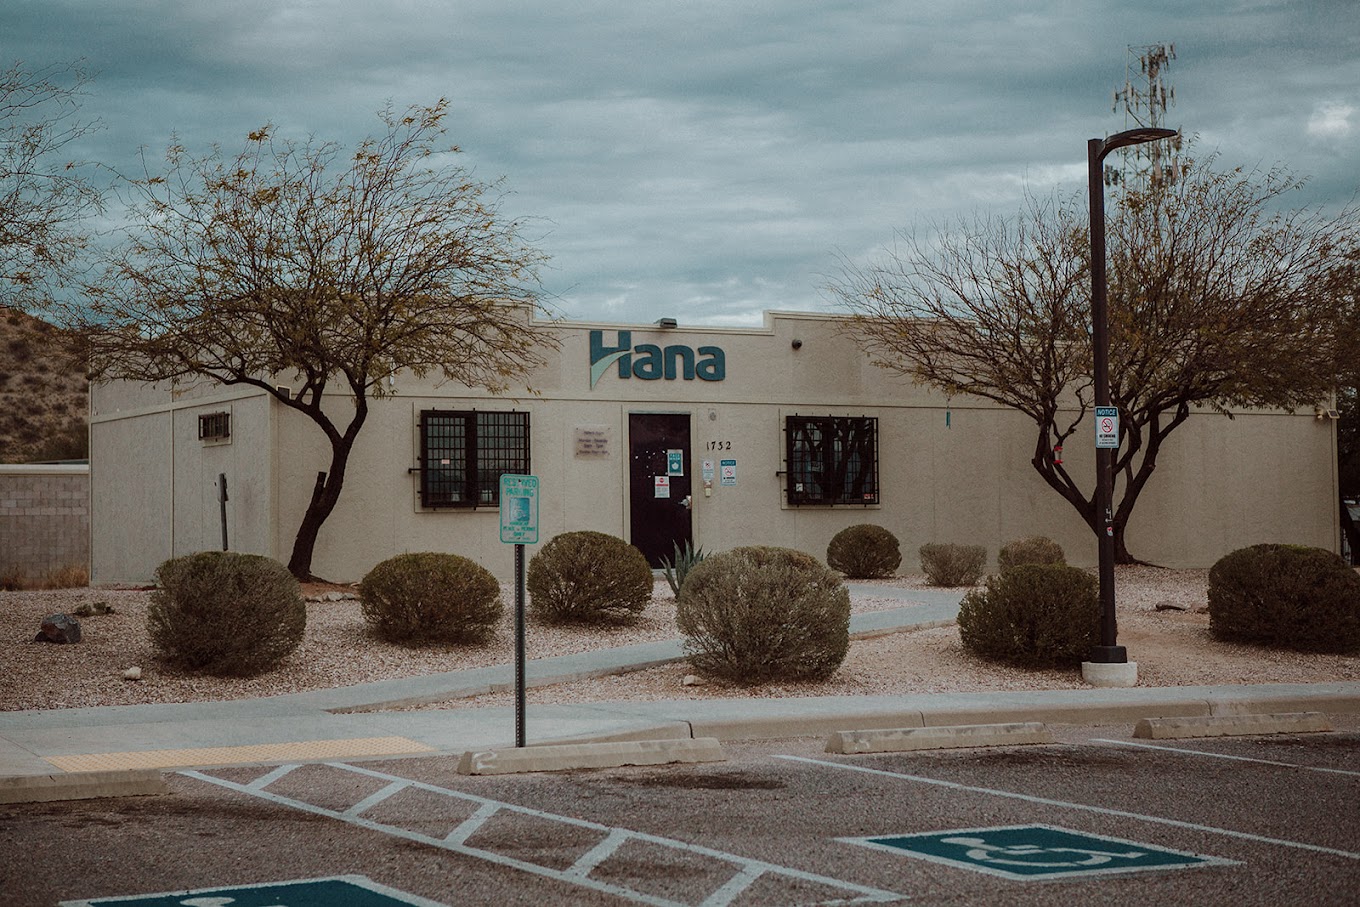 Hana green valley dispensary in Arizona